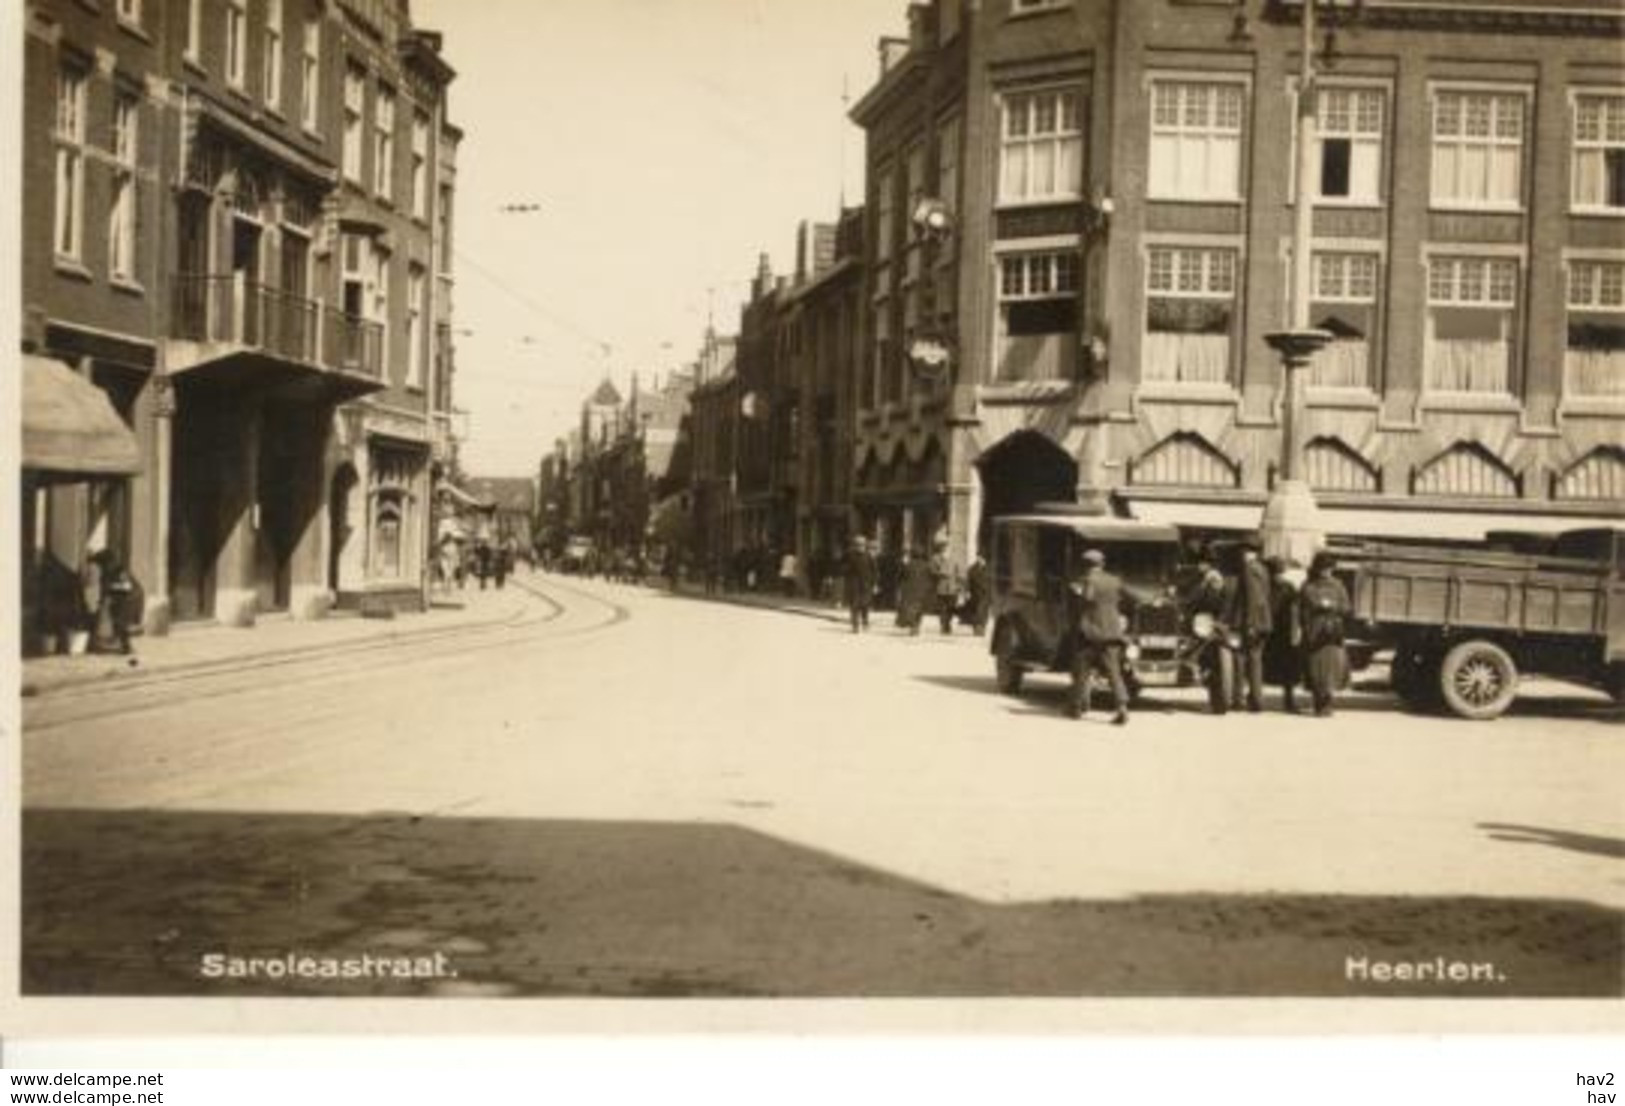 Heerlen Saroleastraat Oude Fotokaart 4975 - Heerlen